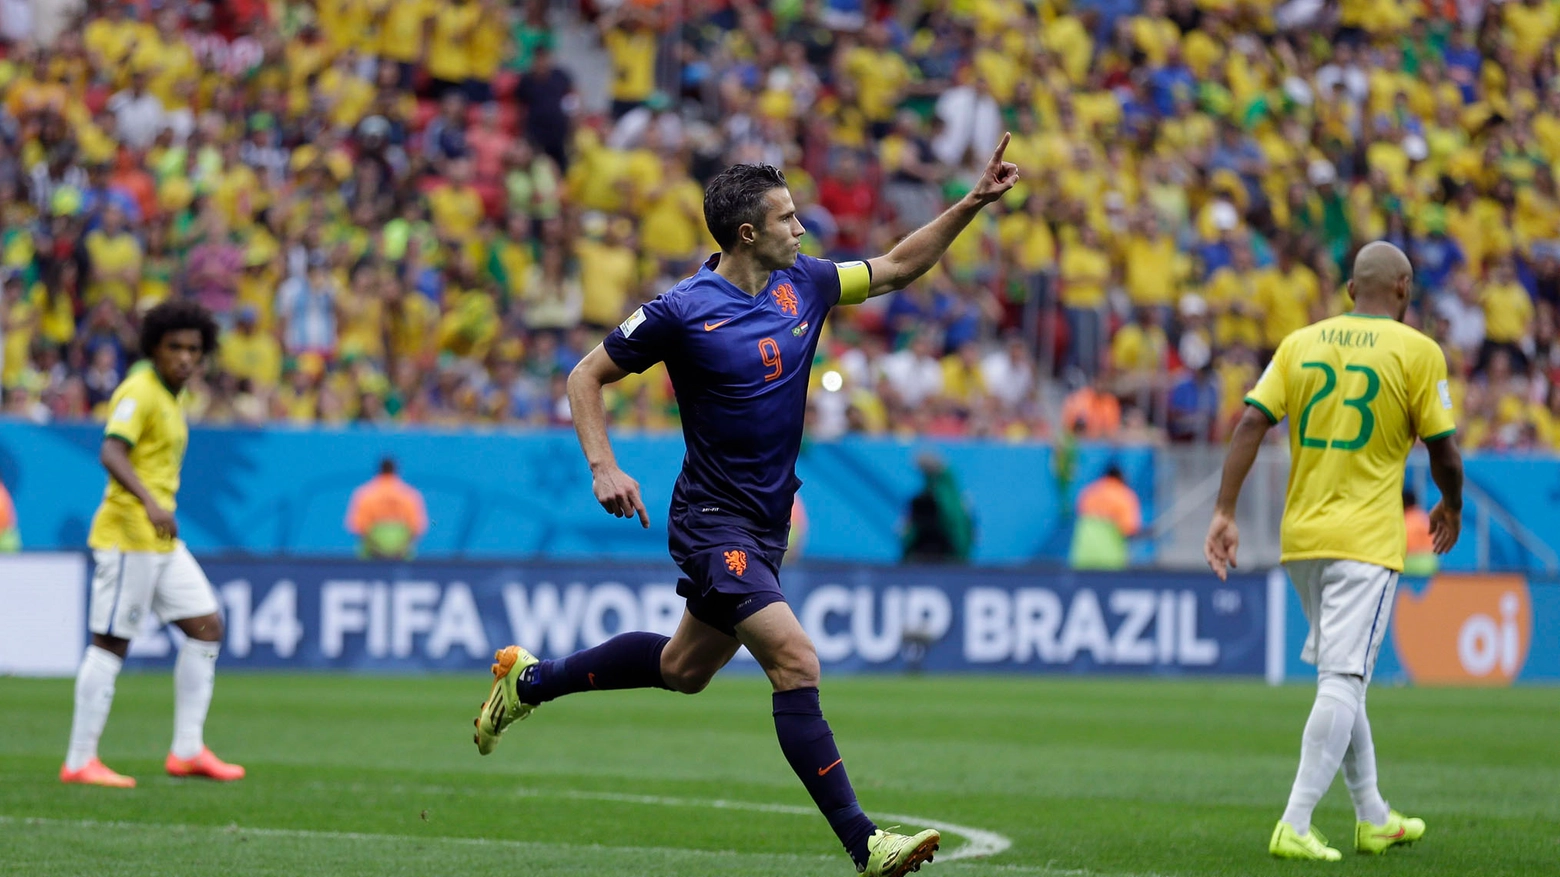 Van Persie festeggia il suo gol al Brasile (Ap)